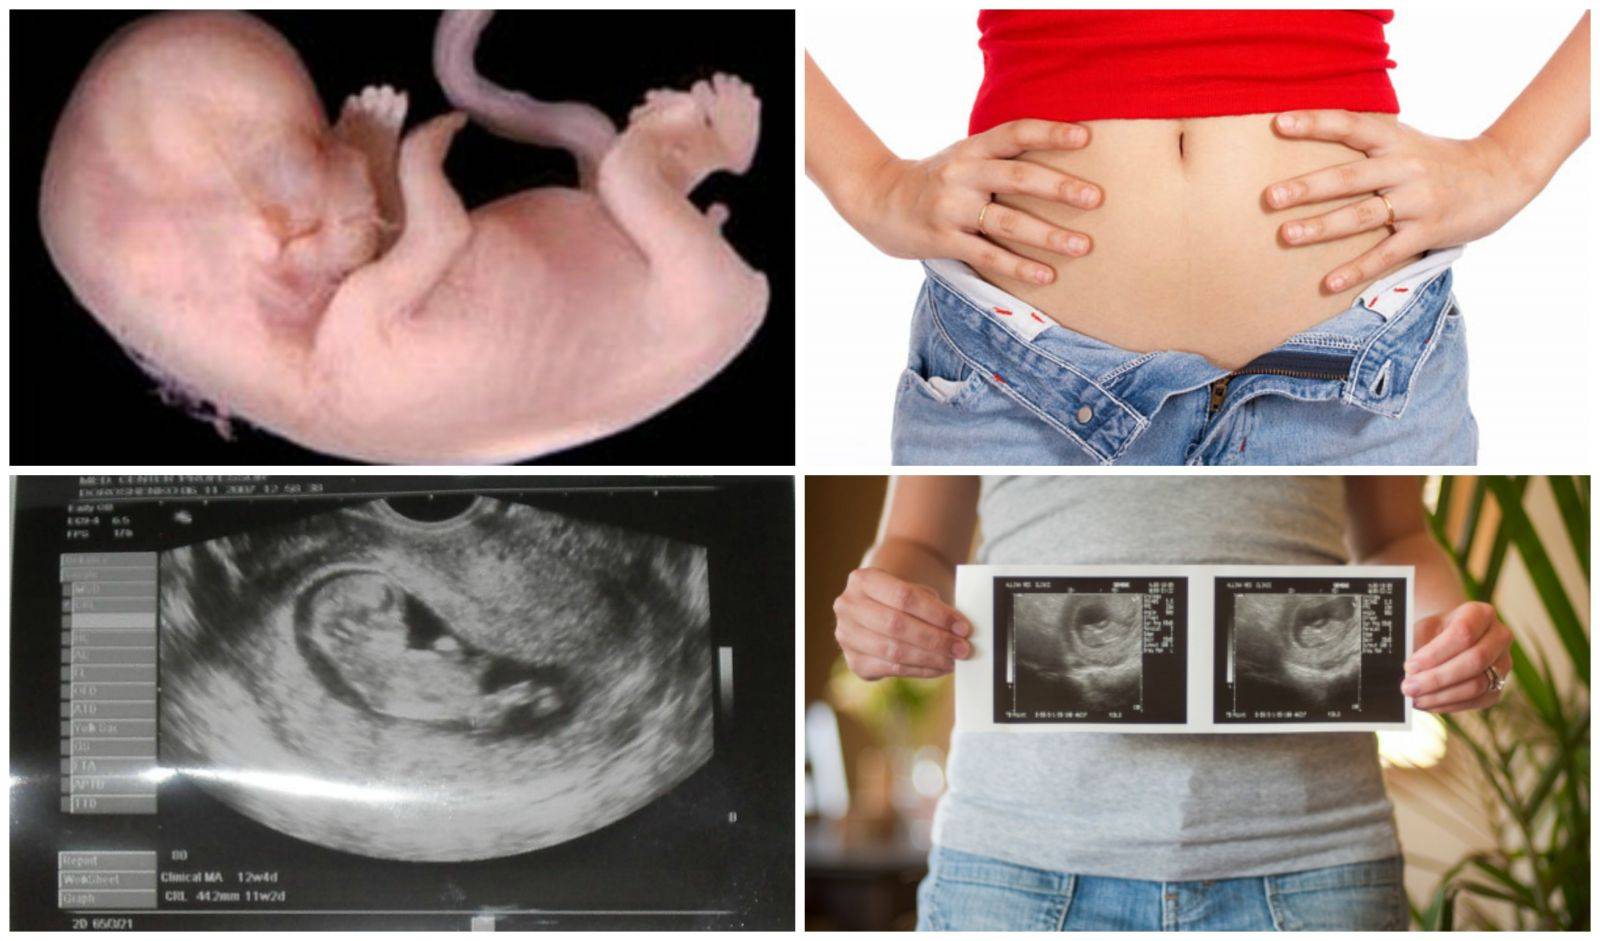 11 неделя беременности - что происходит с беременной, какие ощущения в животе и размер матки на 11 акушерской неделе беременности (третий месяц)